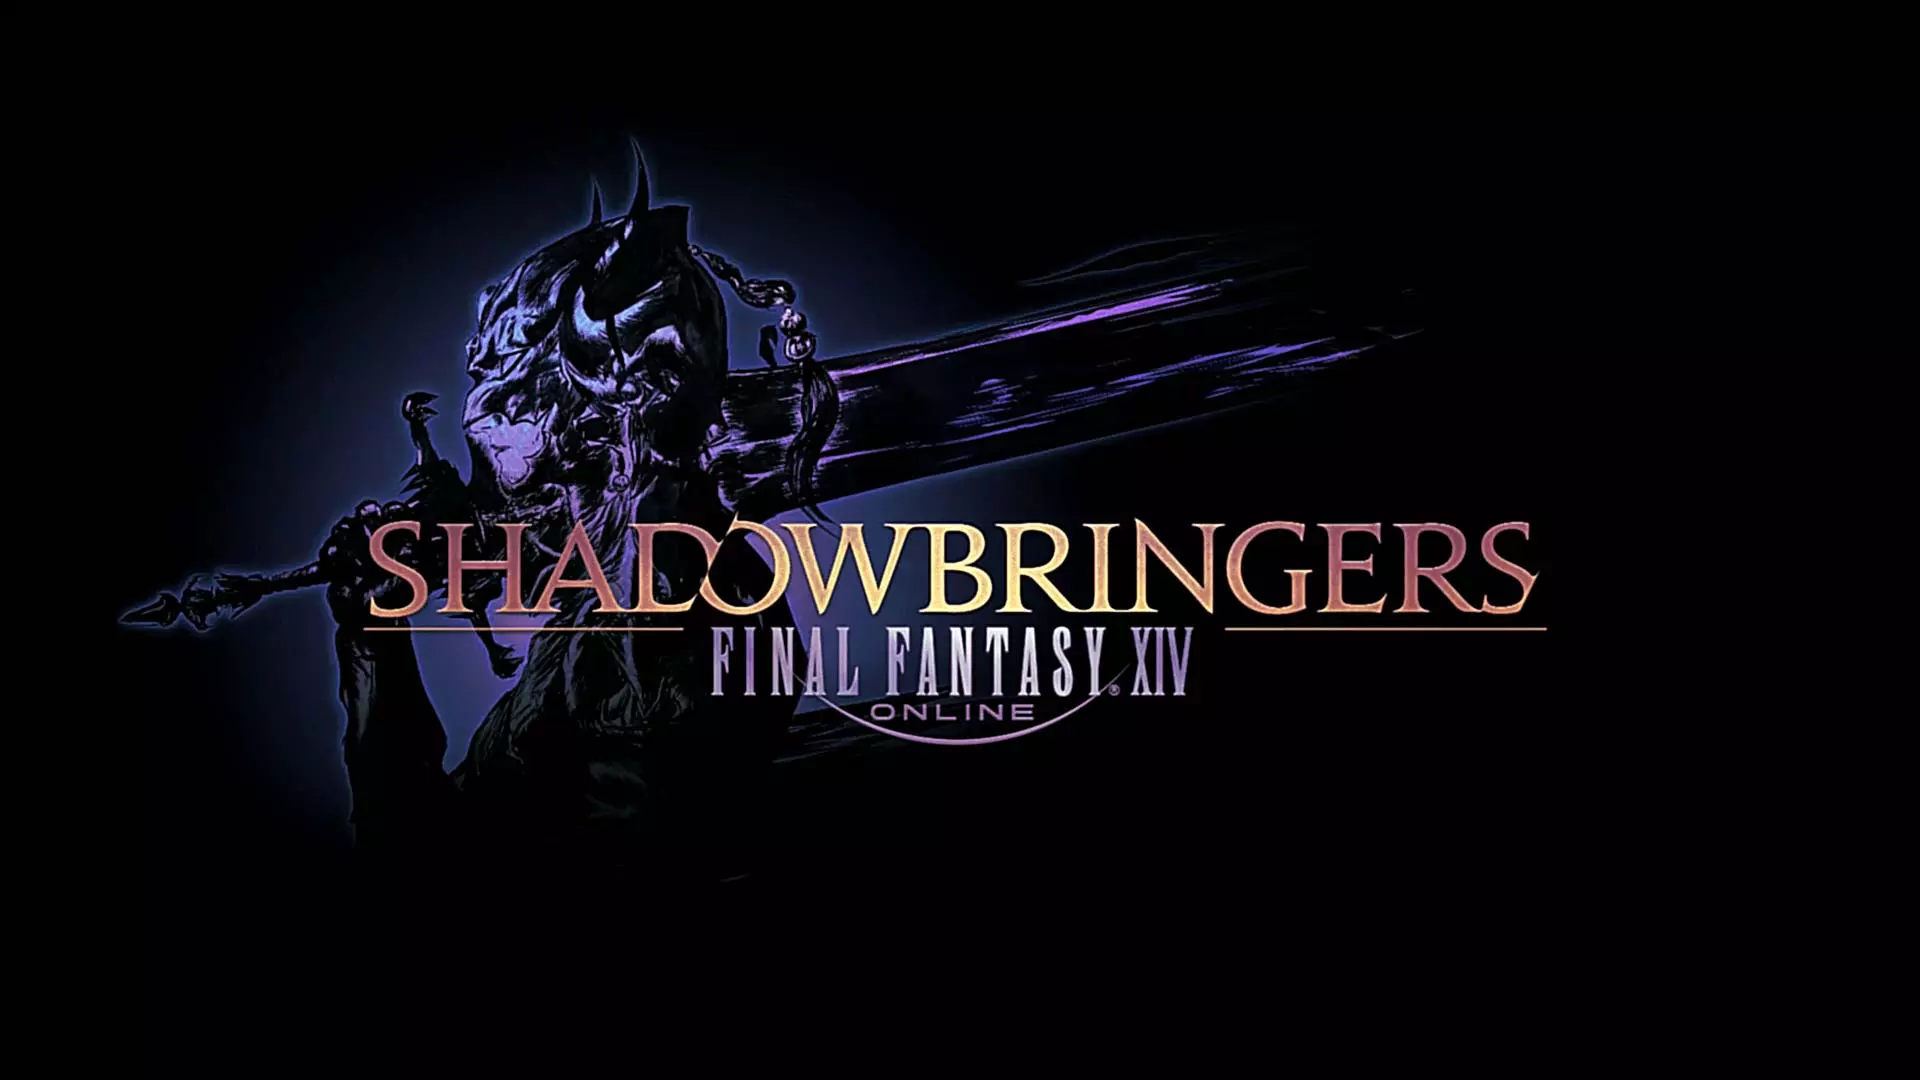 Final Fantasy XIV: Shadowbringers game logo